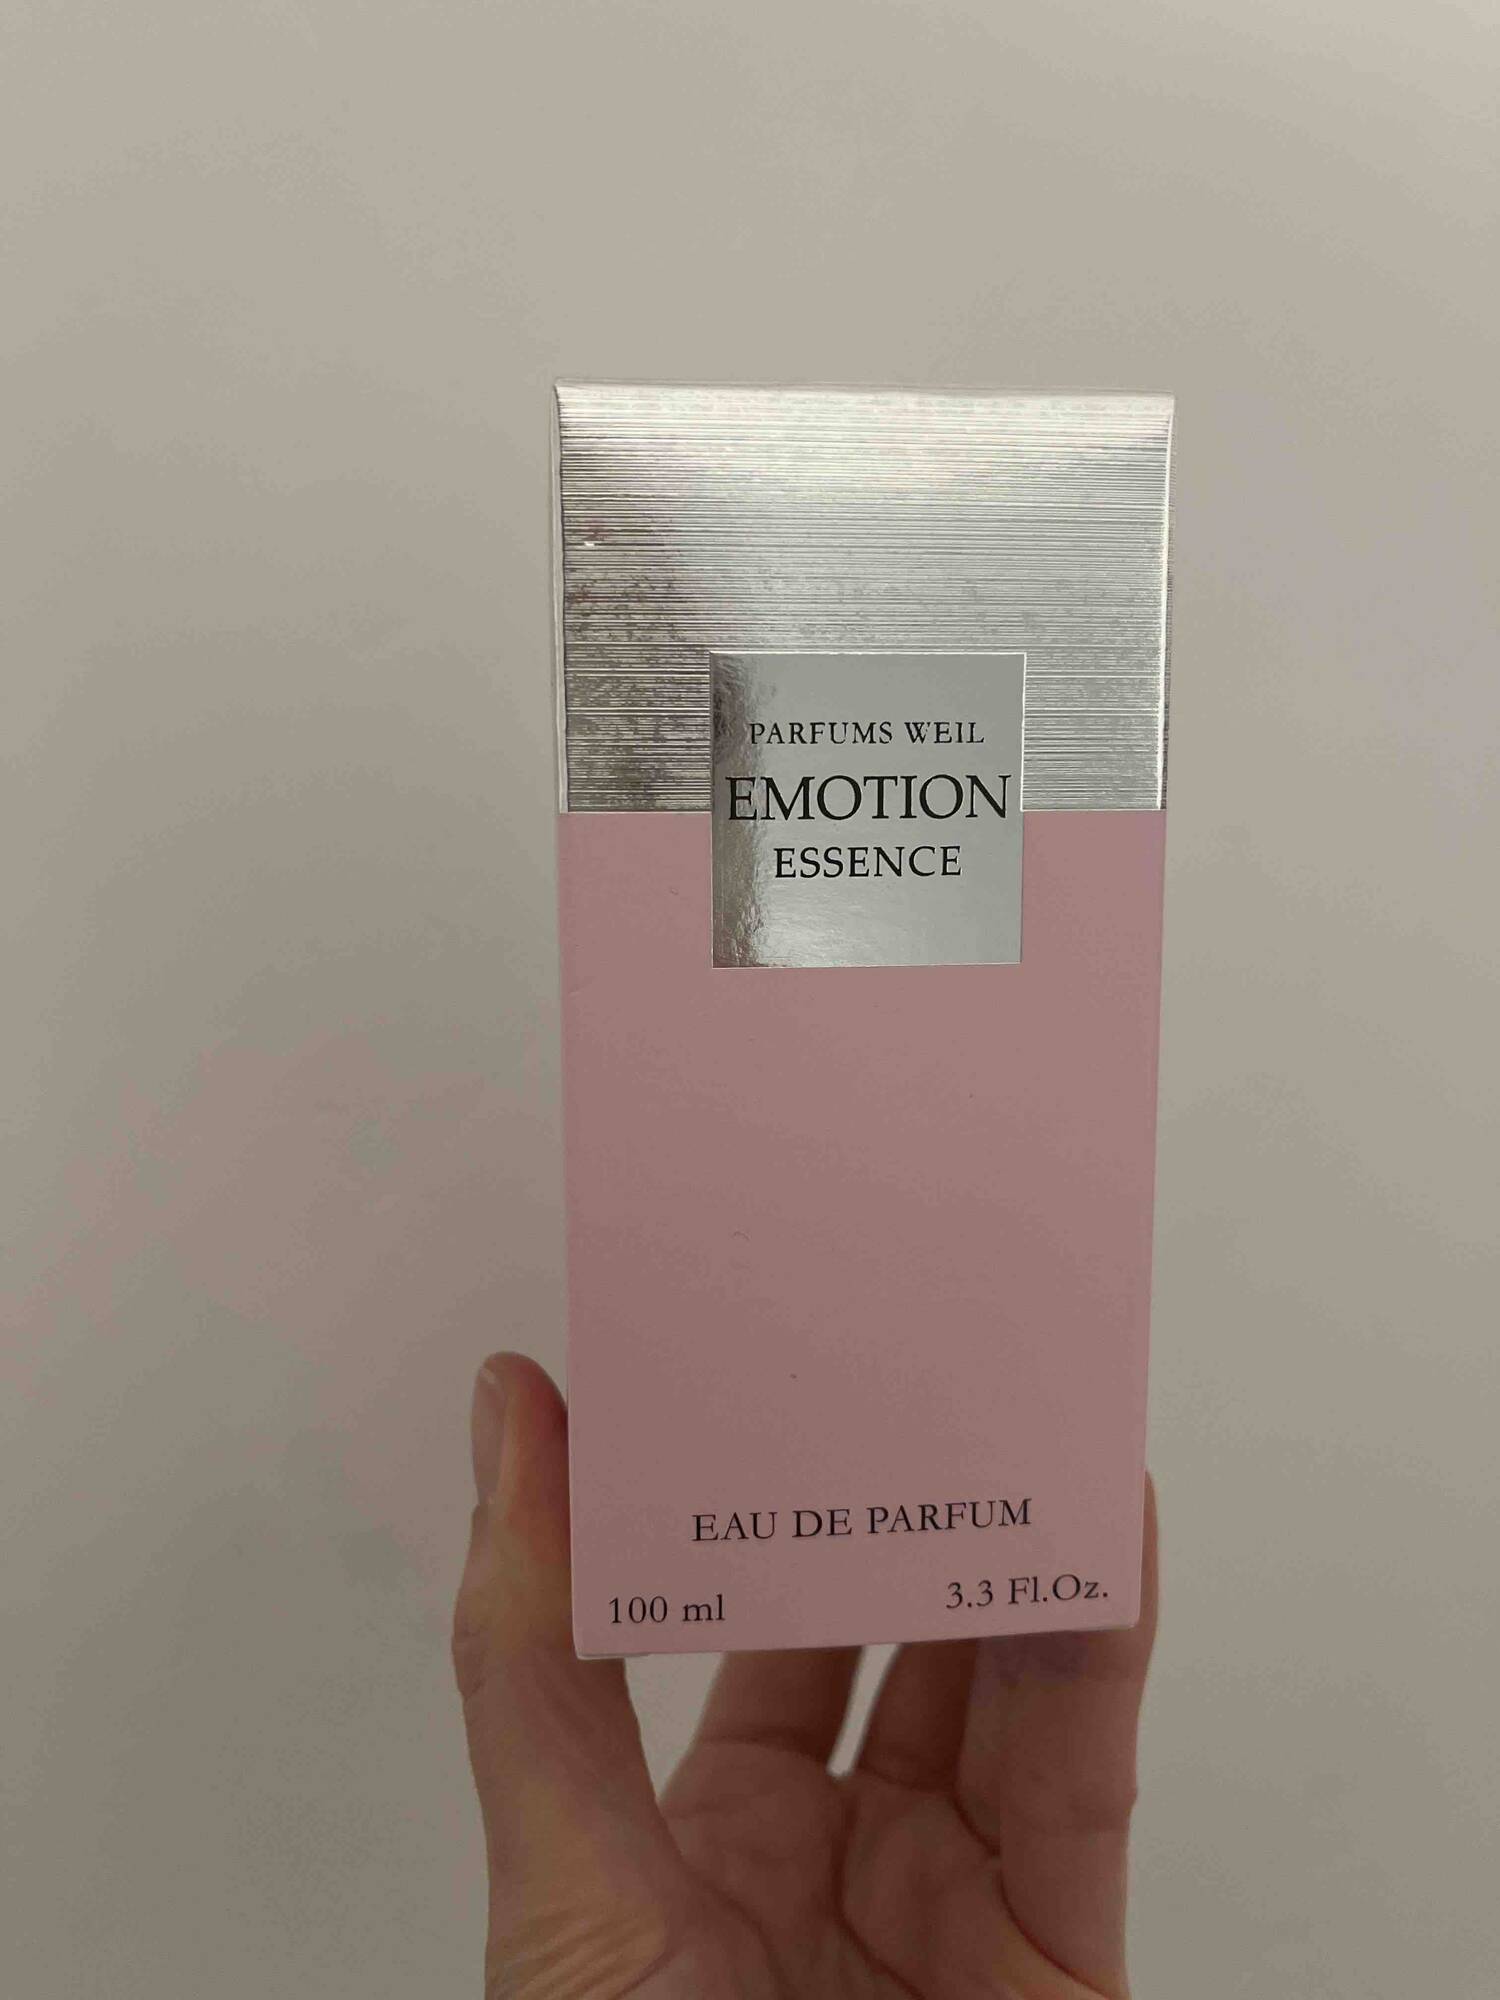 WEIL - Emotion essence - Eau de parfum